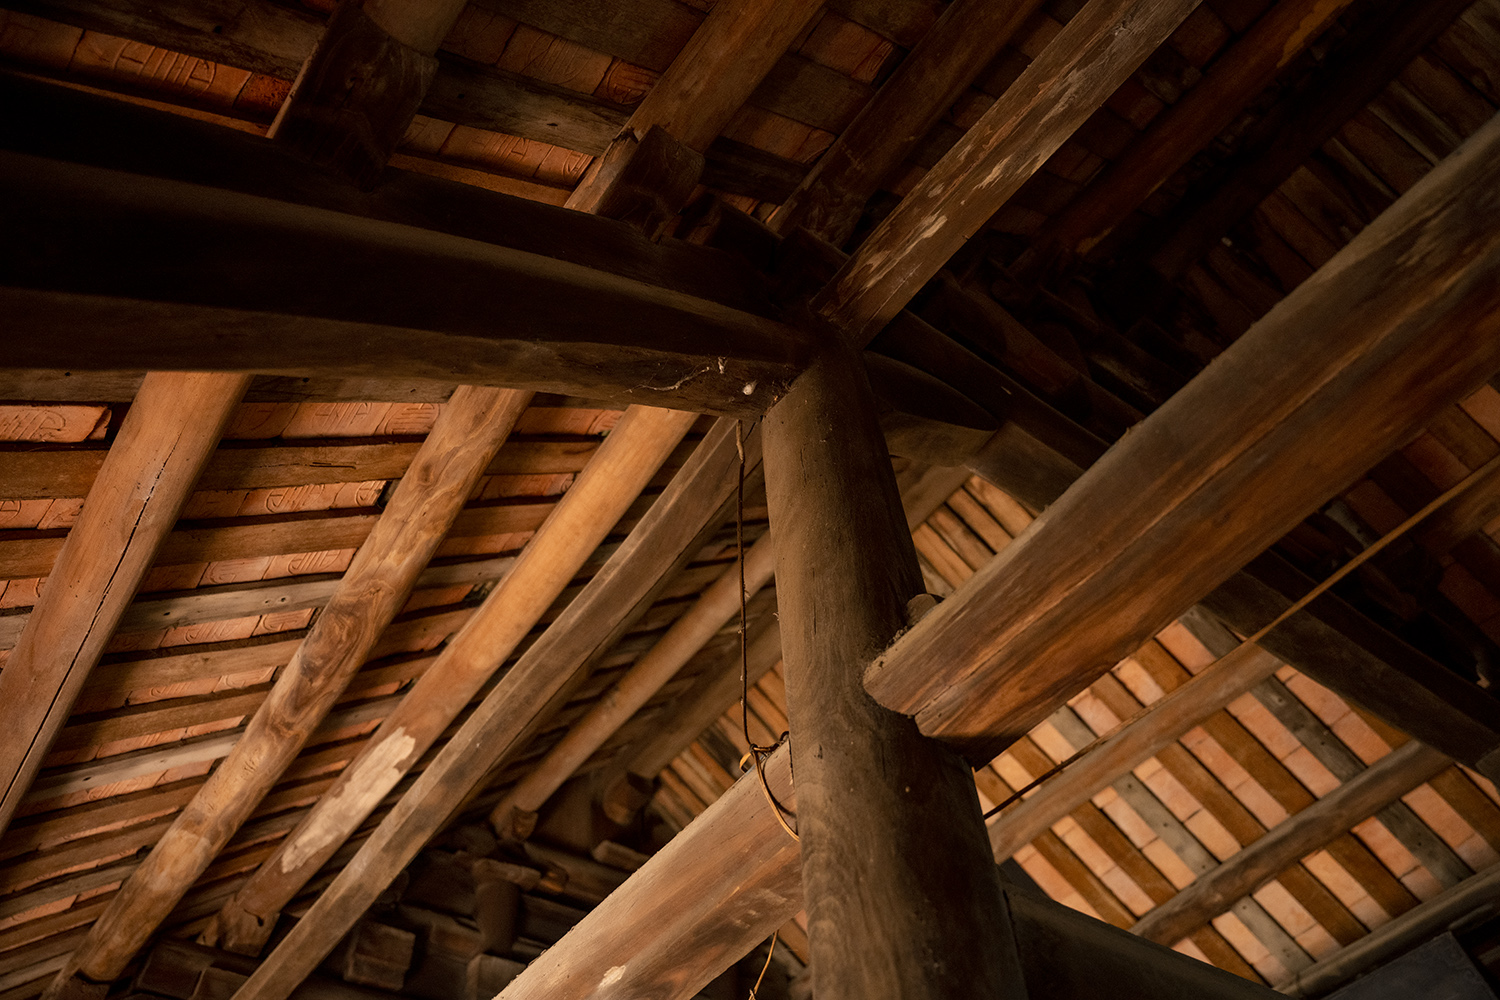 Chủ nhân nhà gỗ lim gần 350 tuổi tiết lộ bí kíp dựng nhà “thần tốc” trong một đêm - 3